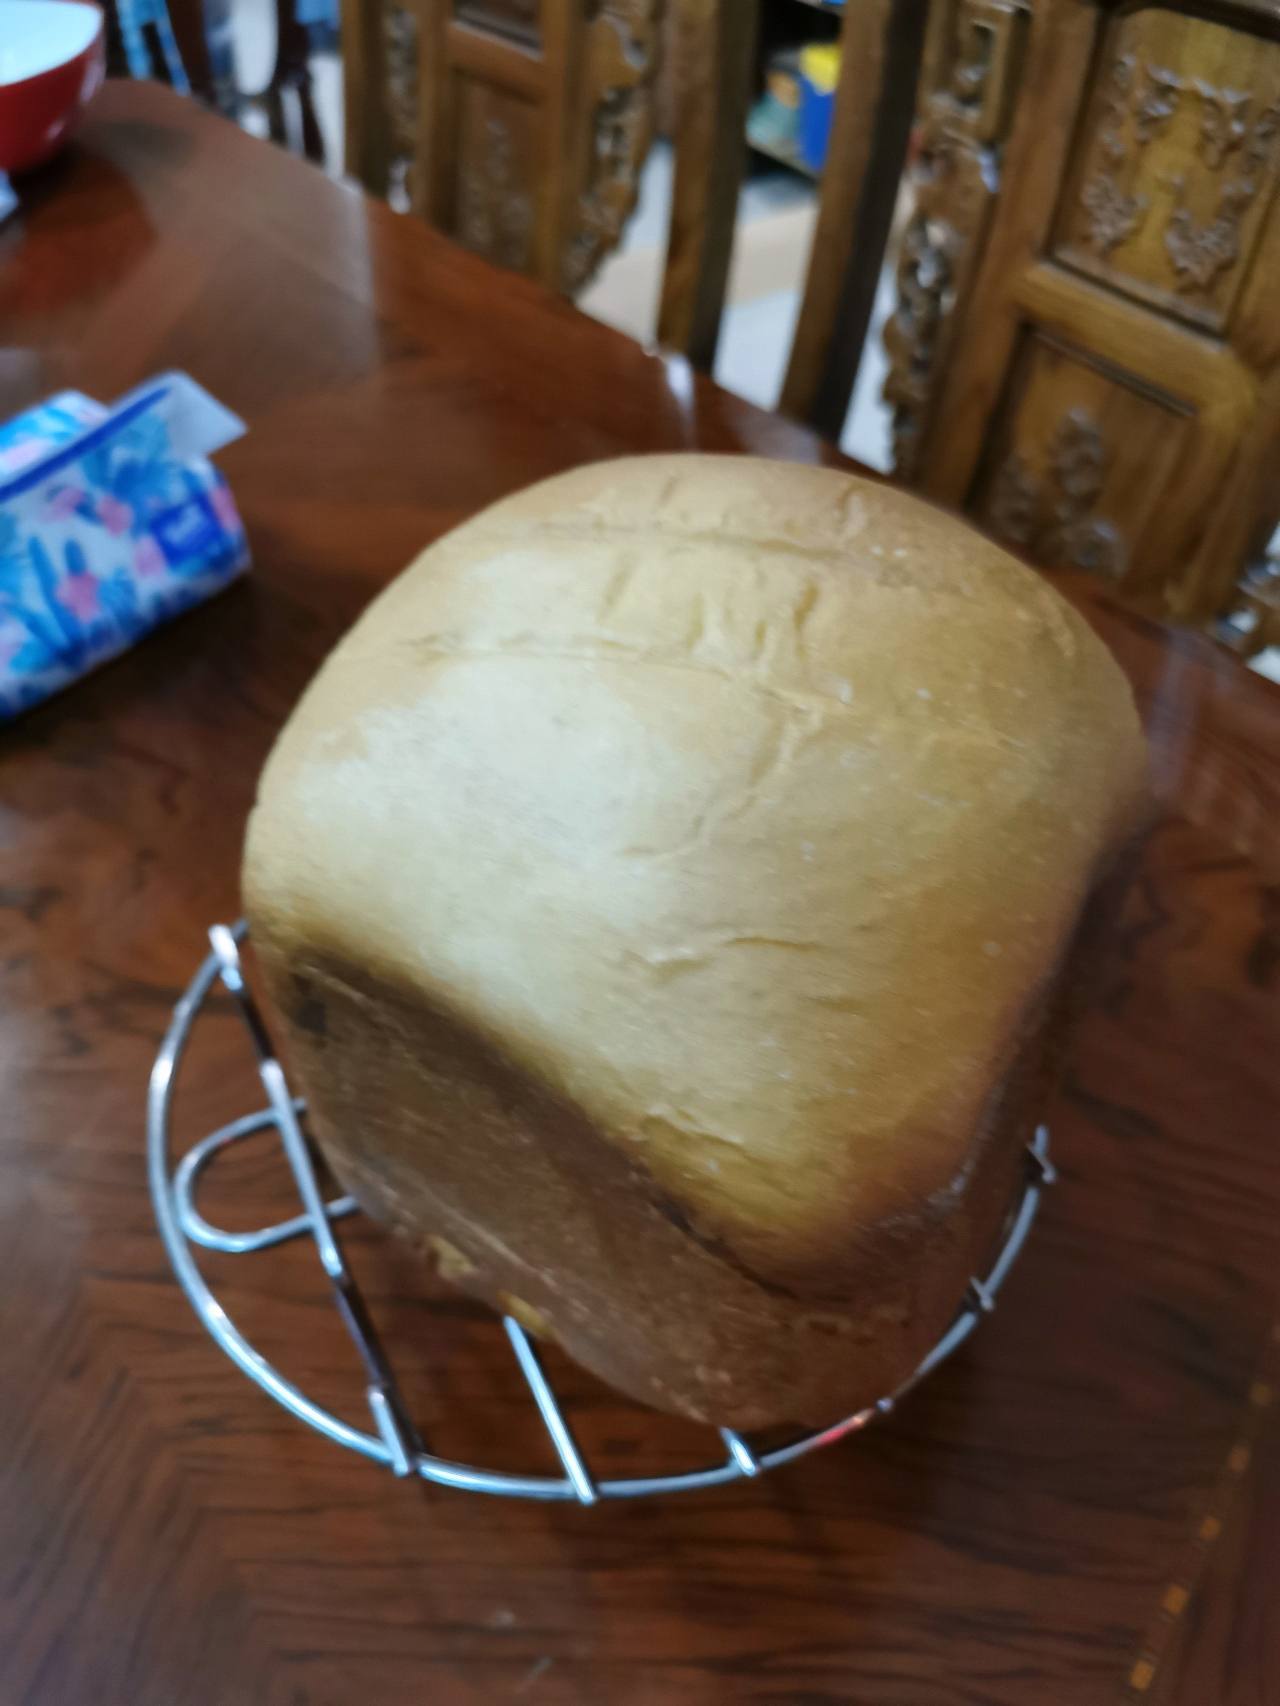 面包机做北海道吐司